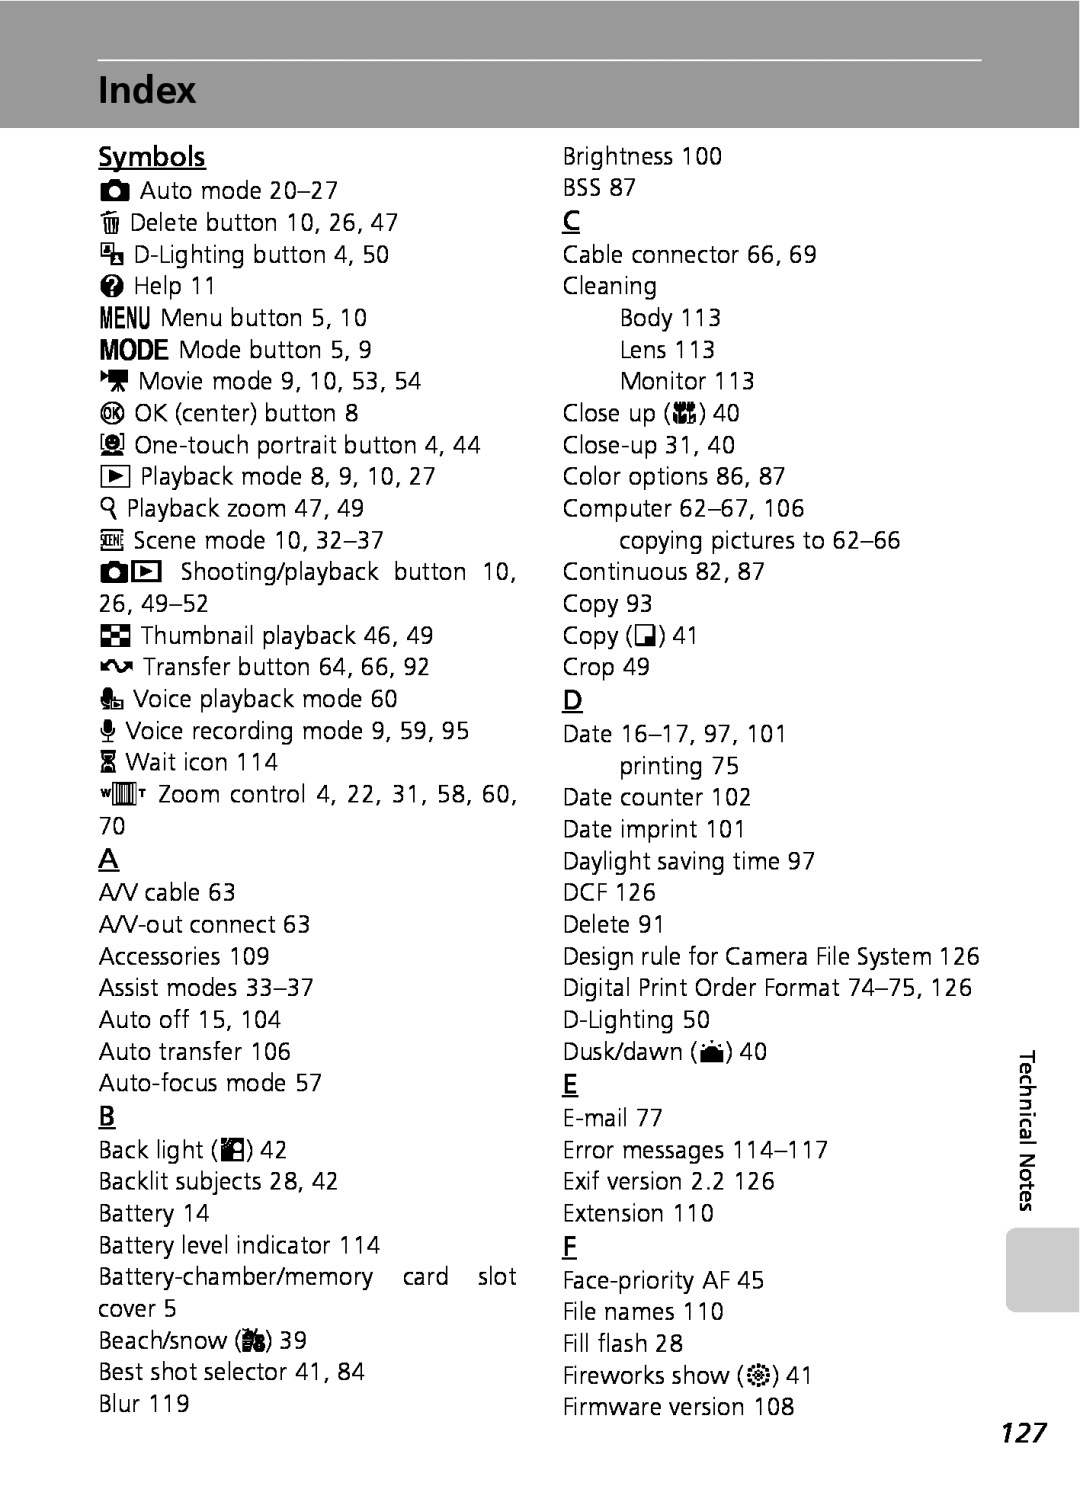 Nikon COOLPIXS9 manual Index, Symbols 